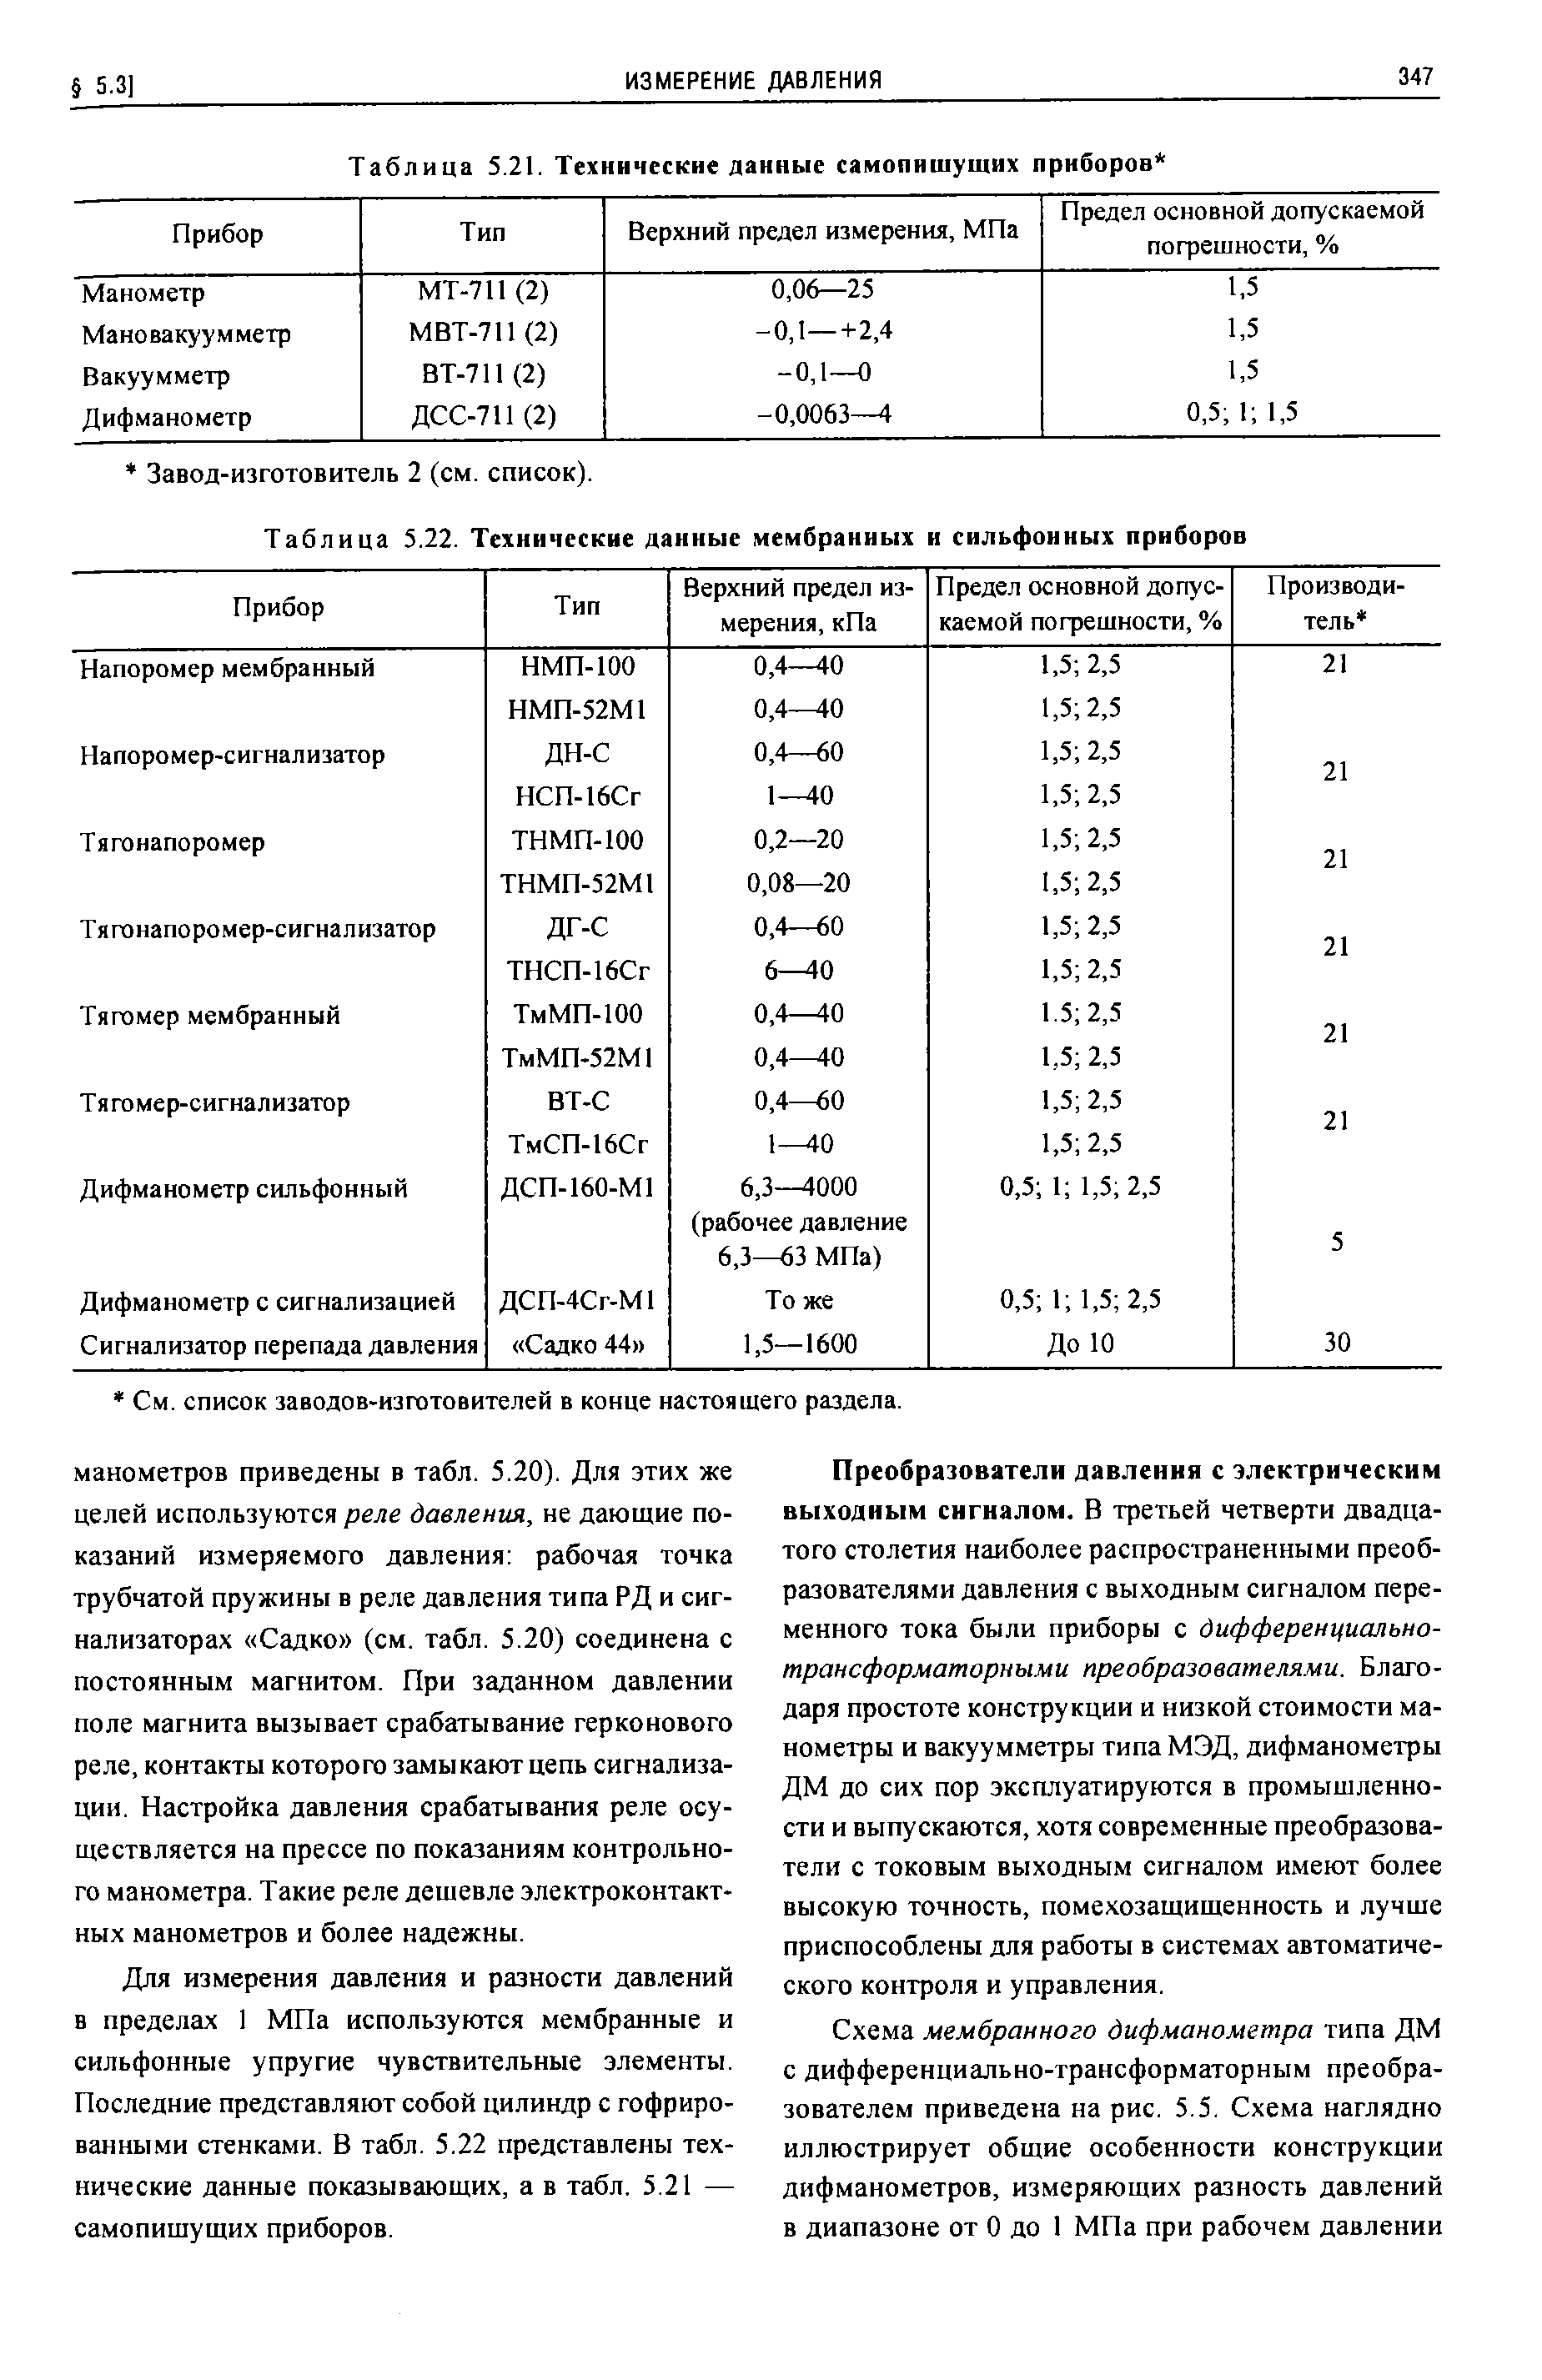 Таблица 5.22. Технические данные мембранных и сильфоиных приборов
